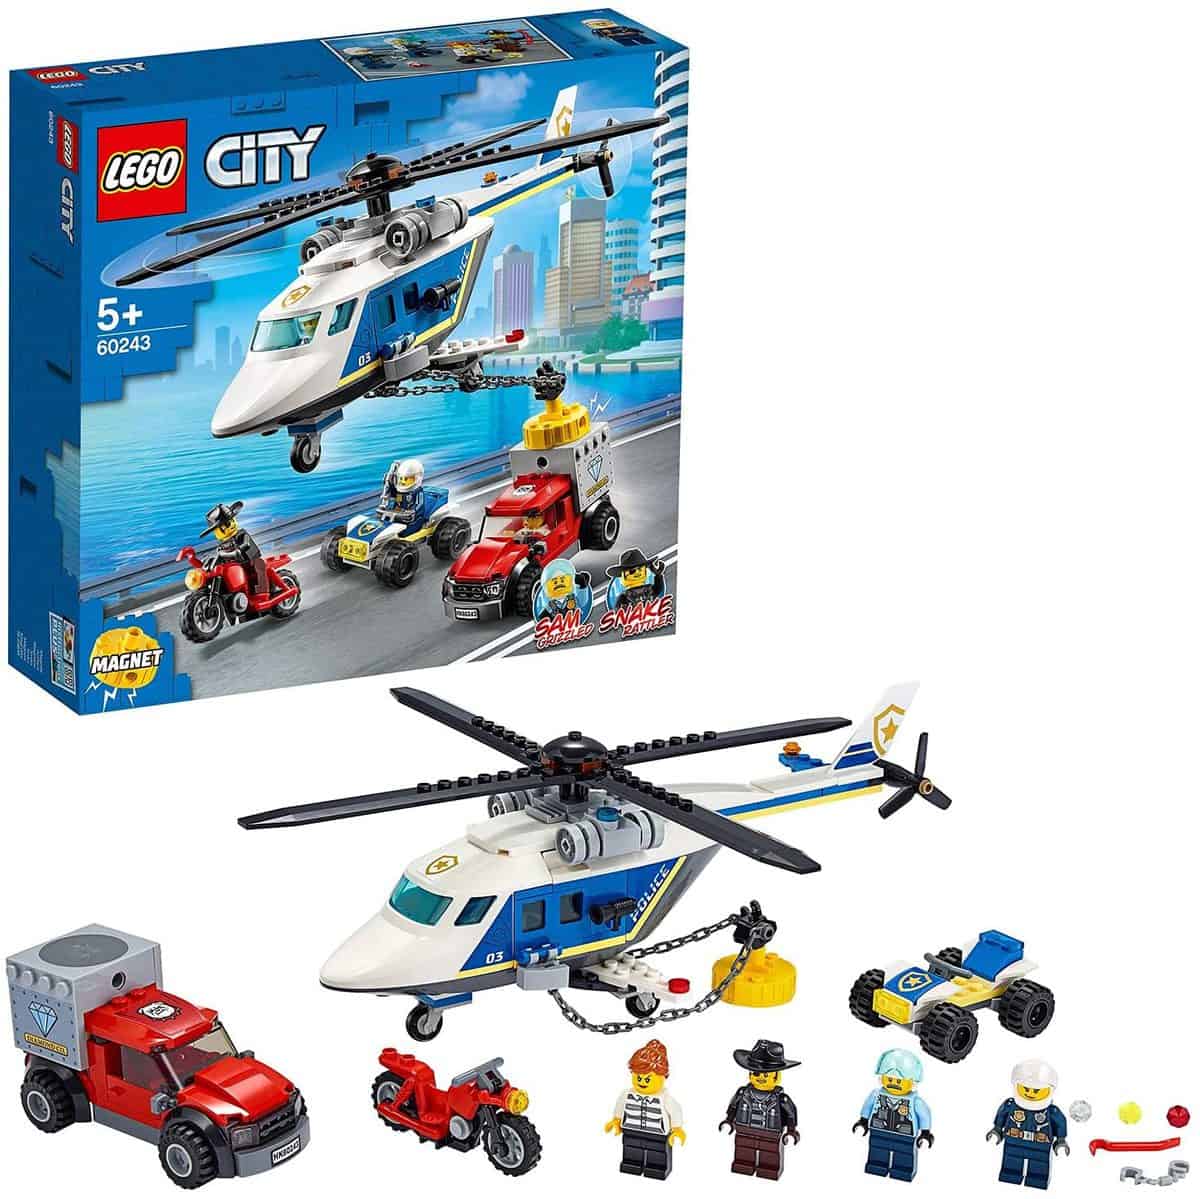 LEGO (60243) City Verfolgungsjagd mit dem Polizeihubschrauber, Quad, Motorrad und Pickup - für 14,99 € [Prime] statt 16,99 €